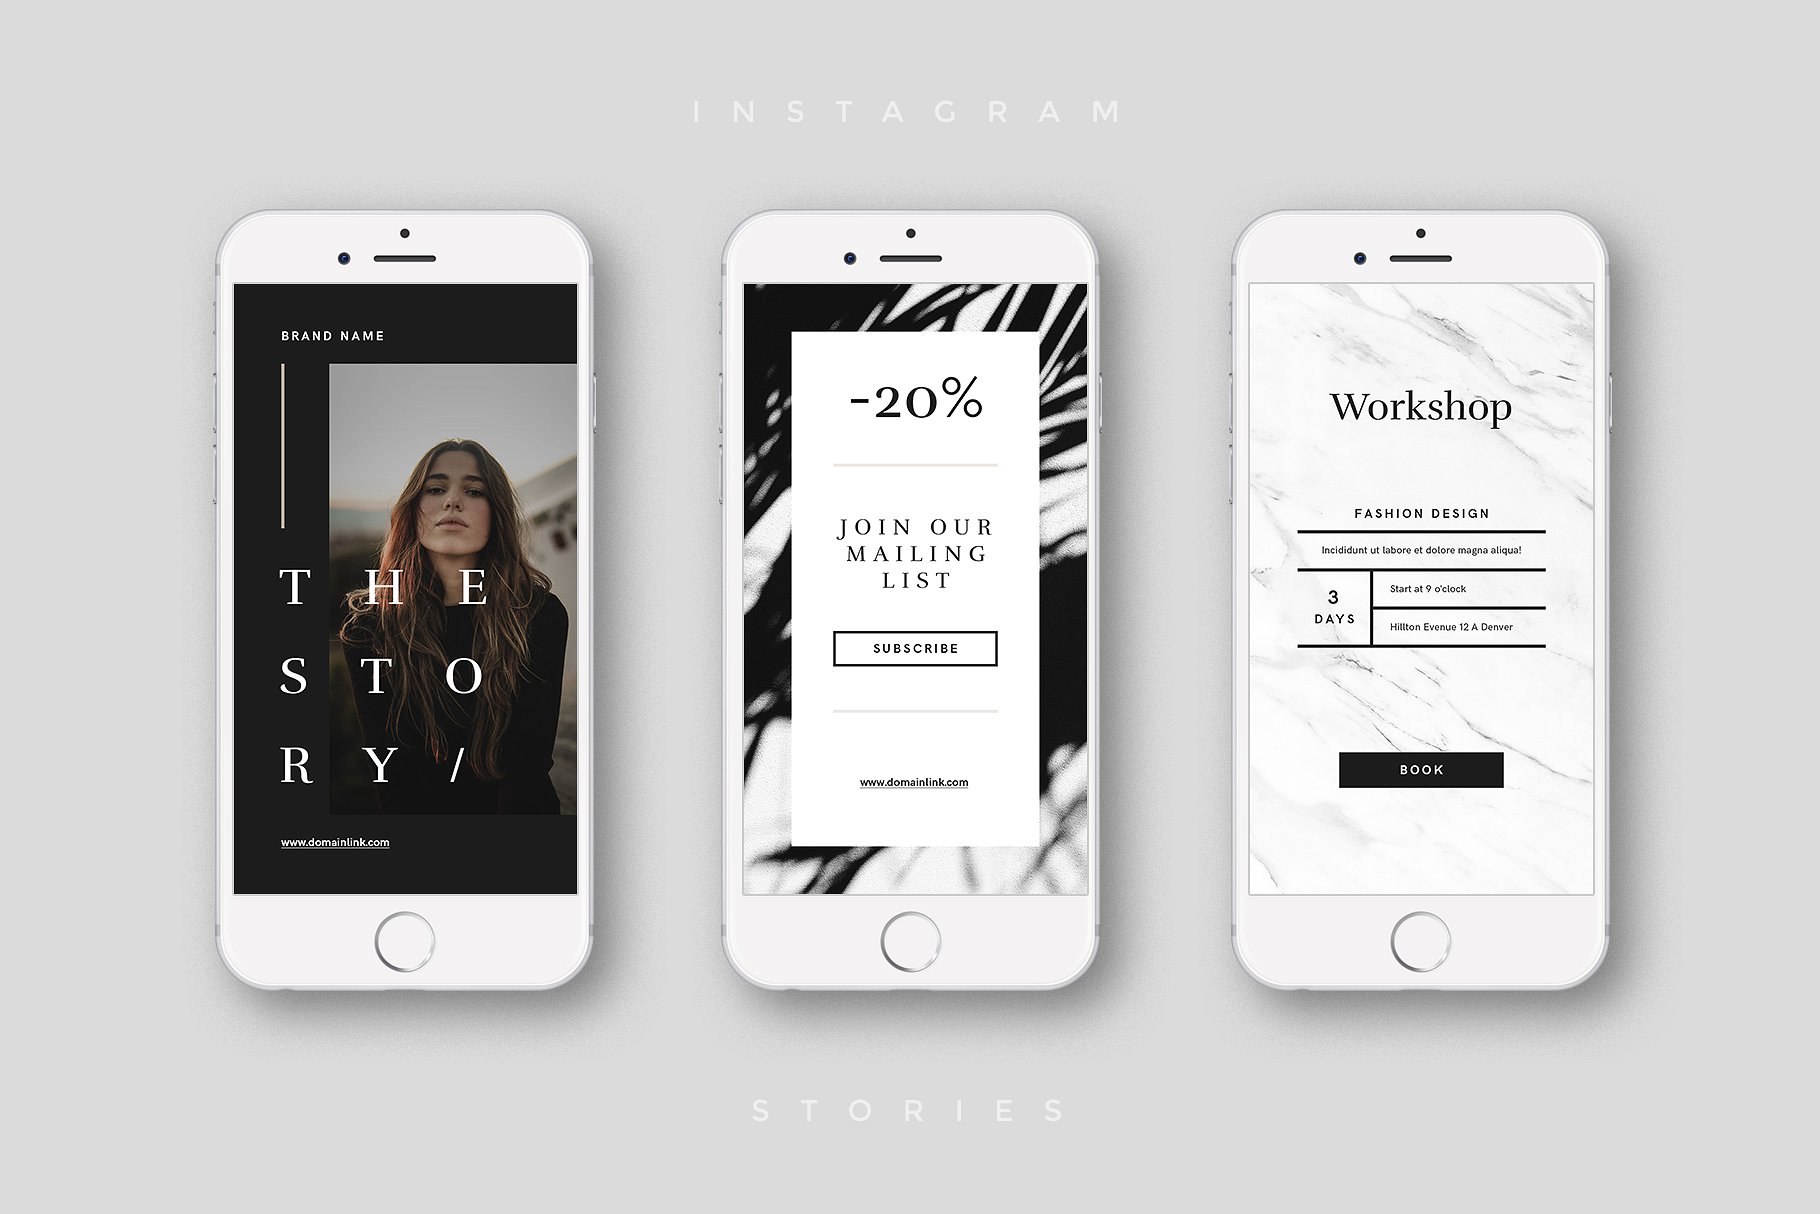 奢侈品电商社交媒体Ins故事贴图模板第一素材精选 Luxury Instagram Stories Pack插图(4)